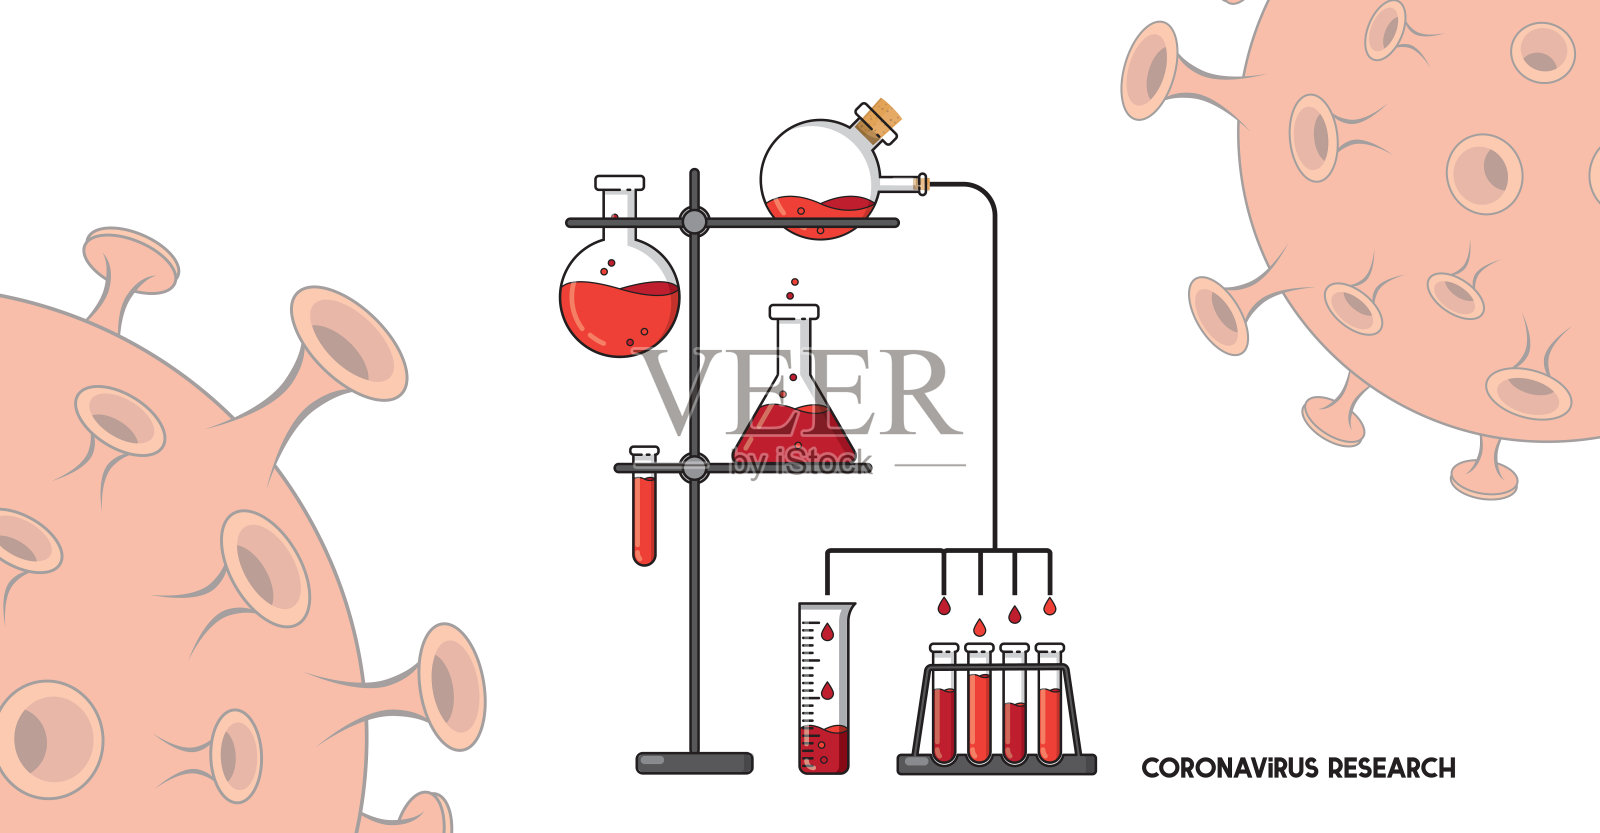 冠状病毒研究的实验室背景与实验寻找治愈方法插画图片素材